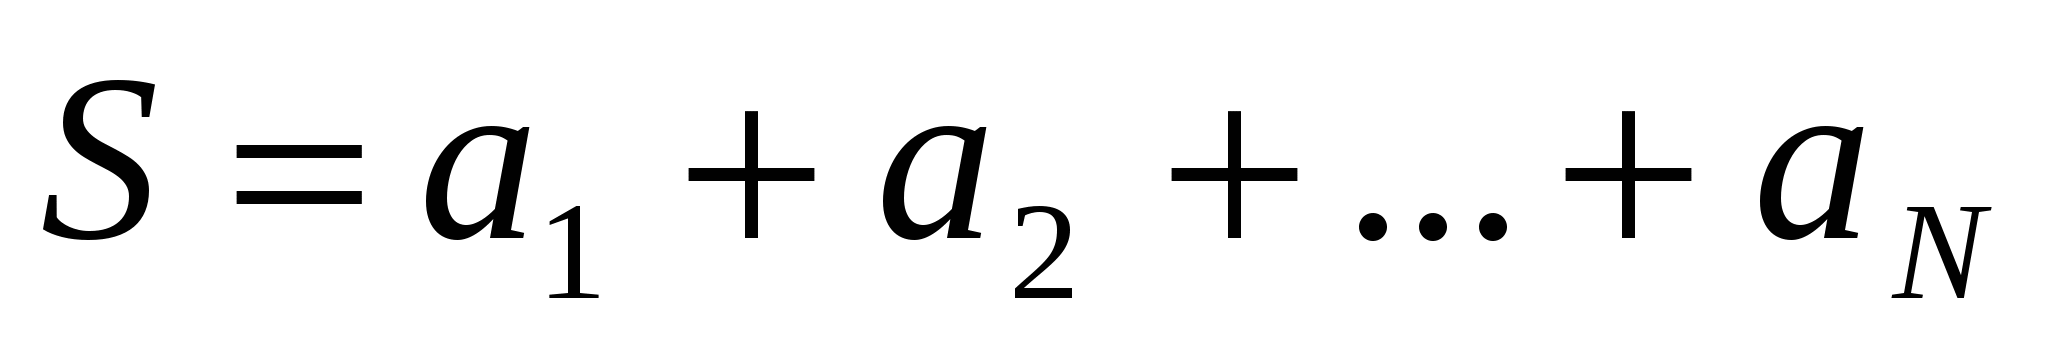 5 5 5 5 n слагаемых. Венгерский метод формула.